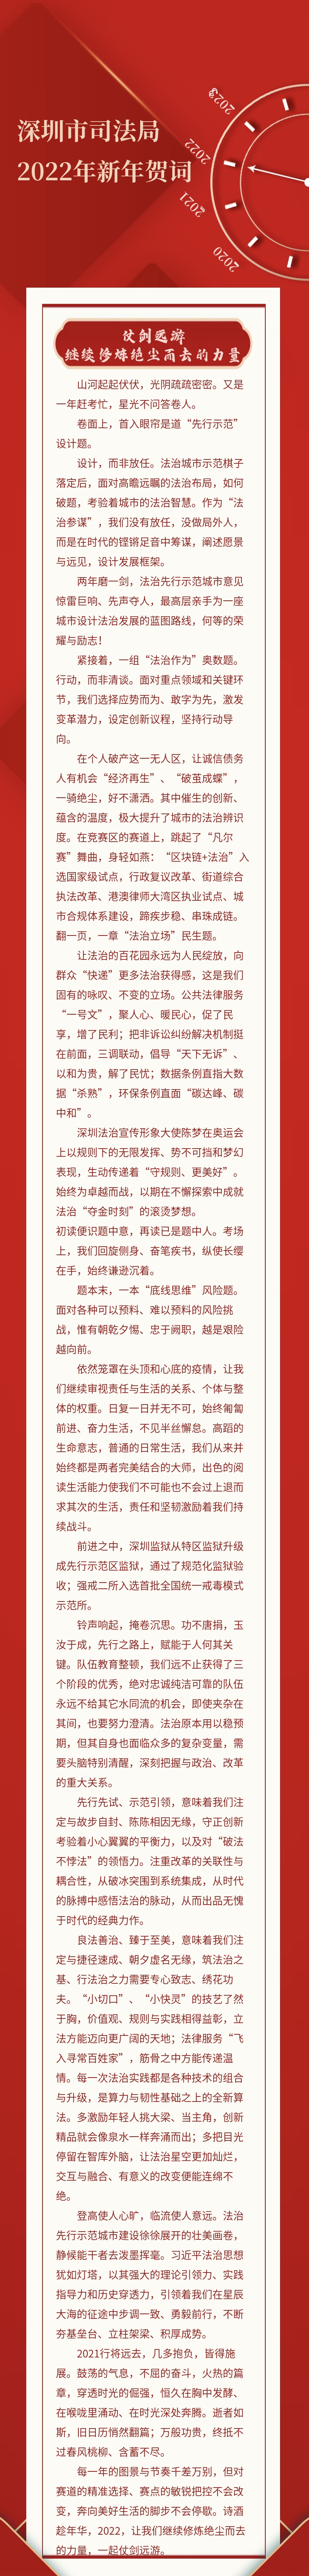 深圳市司法局发表2022年新年贺词：勇毅前行，做新时代赶考人